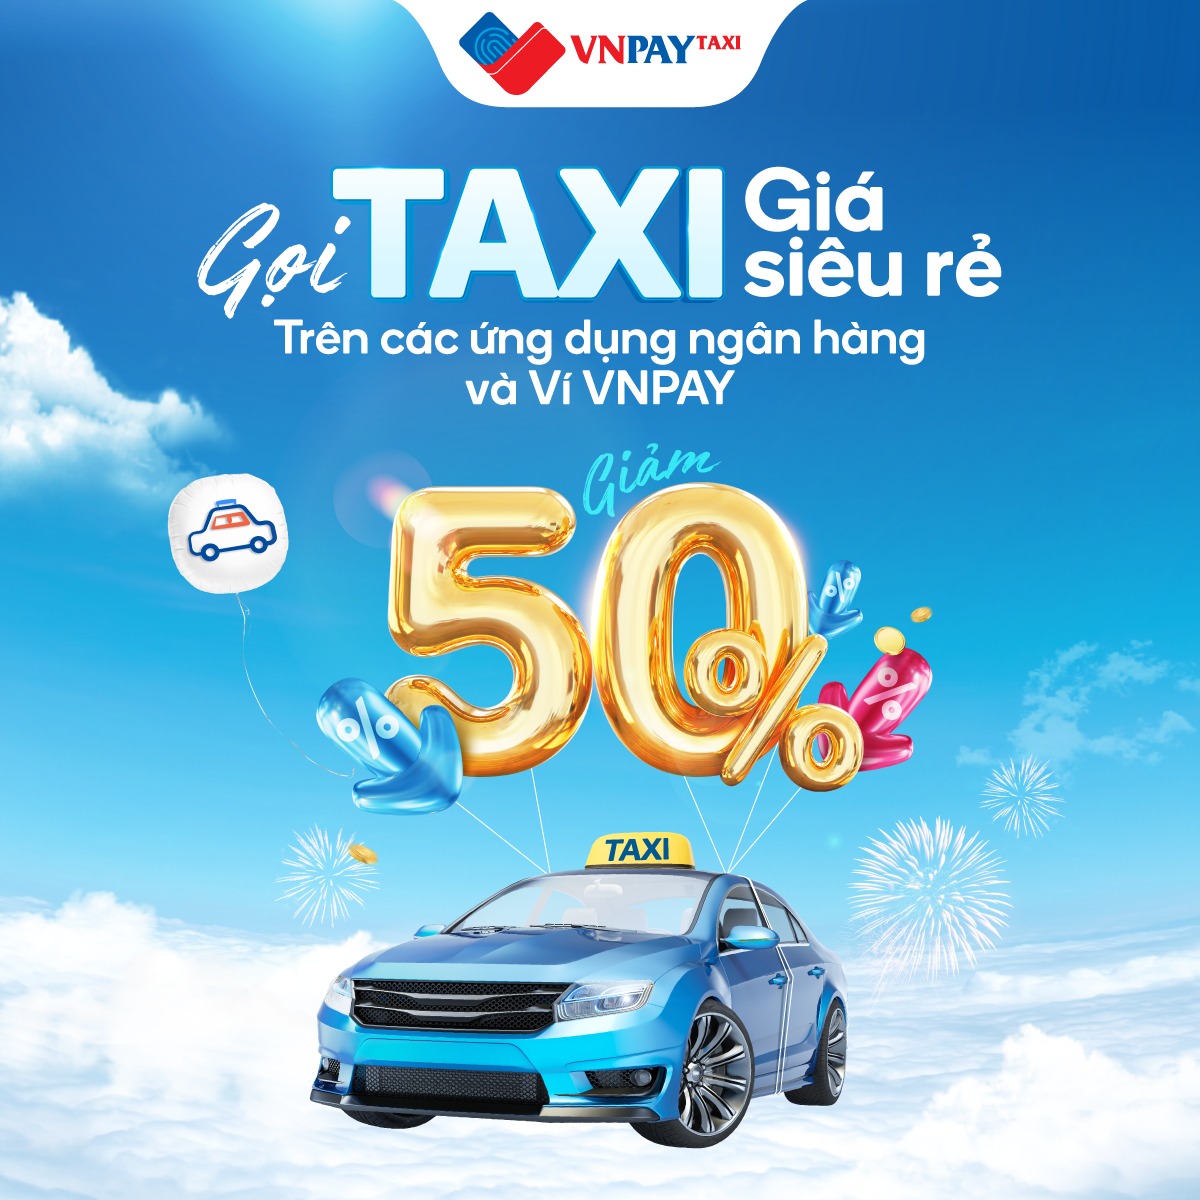 Tháng 11 này, tha hồ gọi VNPAY Taxi trên ứng dụng ngân hàng và ví VNPAY để hưởng ưu đãi tới 50%.